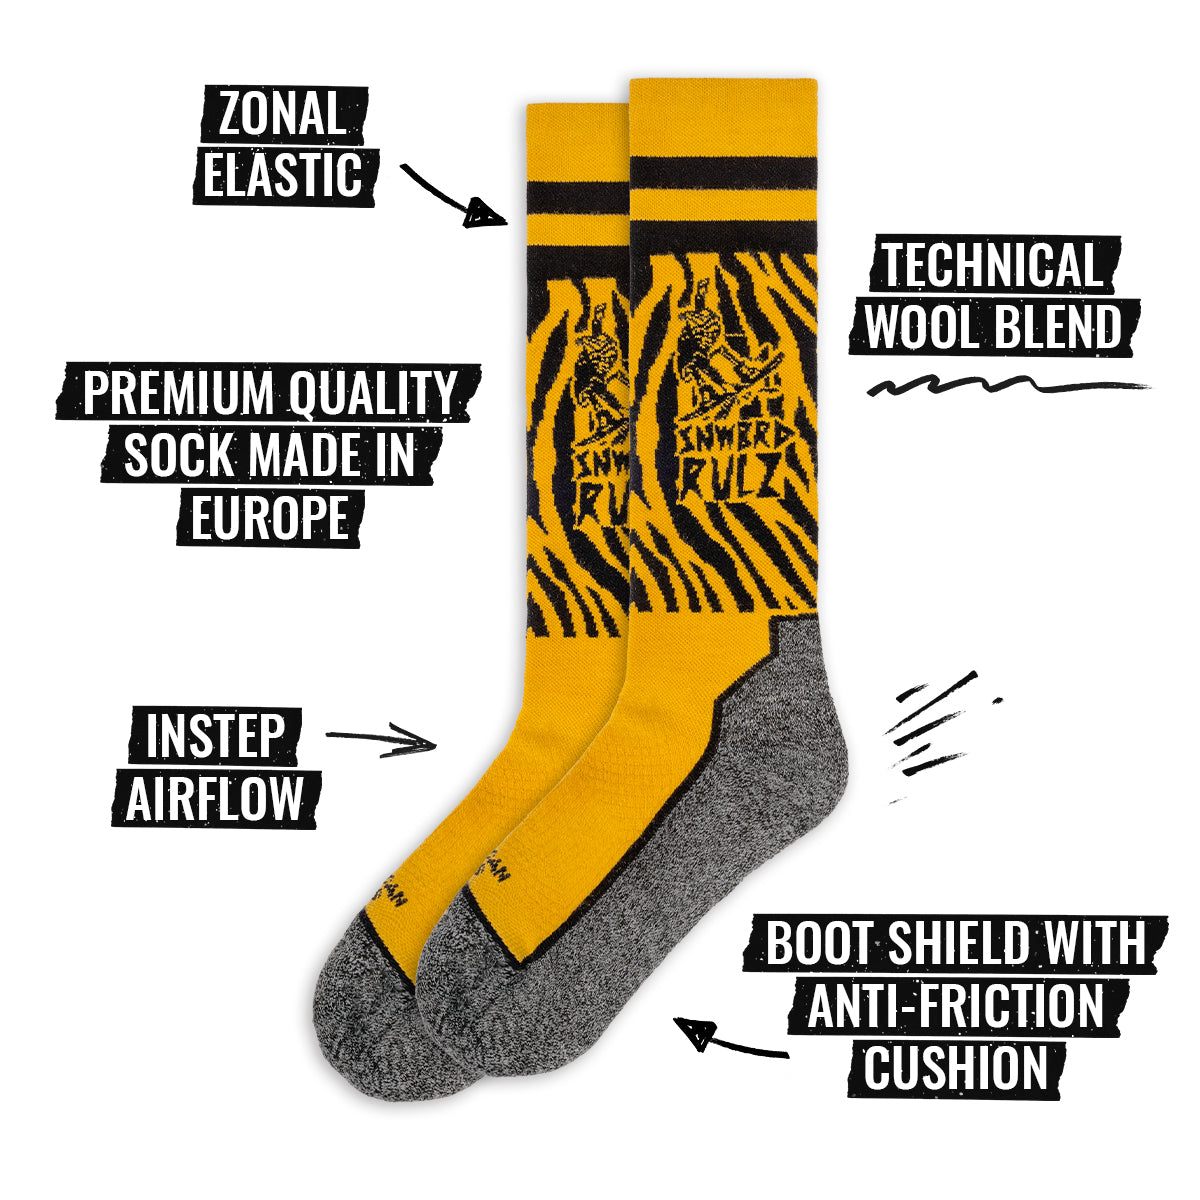 Immagine delle specifiche dei calzini American Socks Knee High Snow